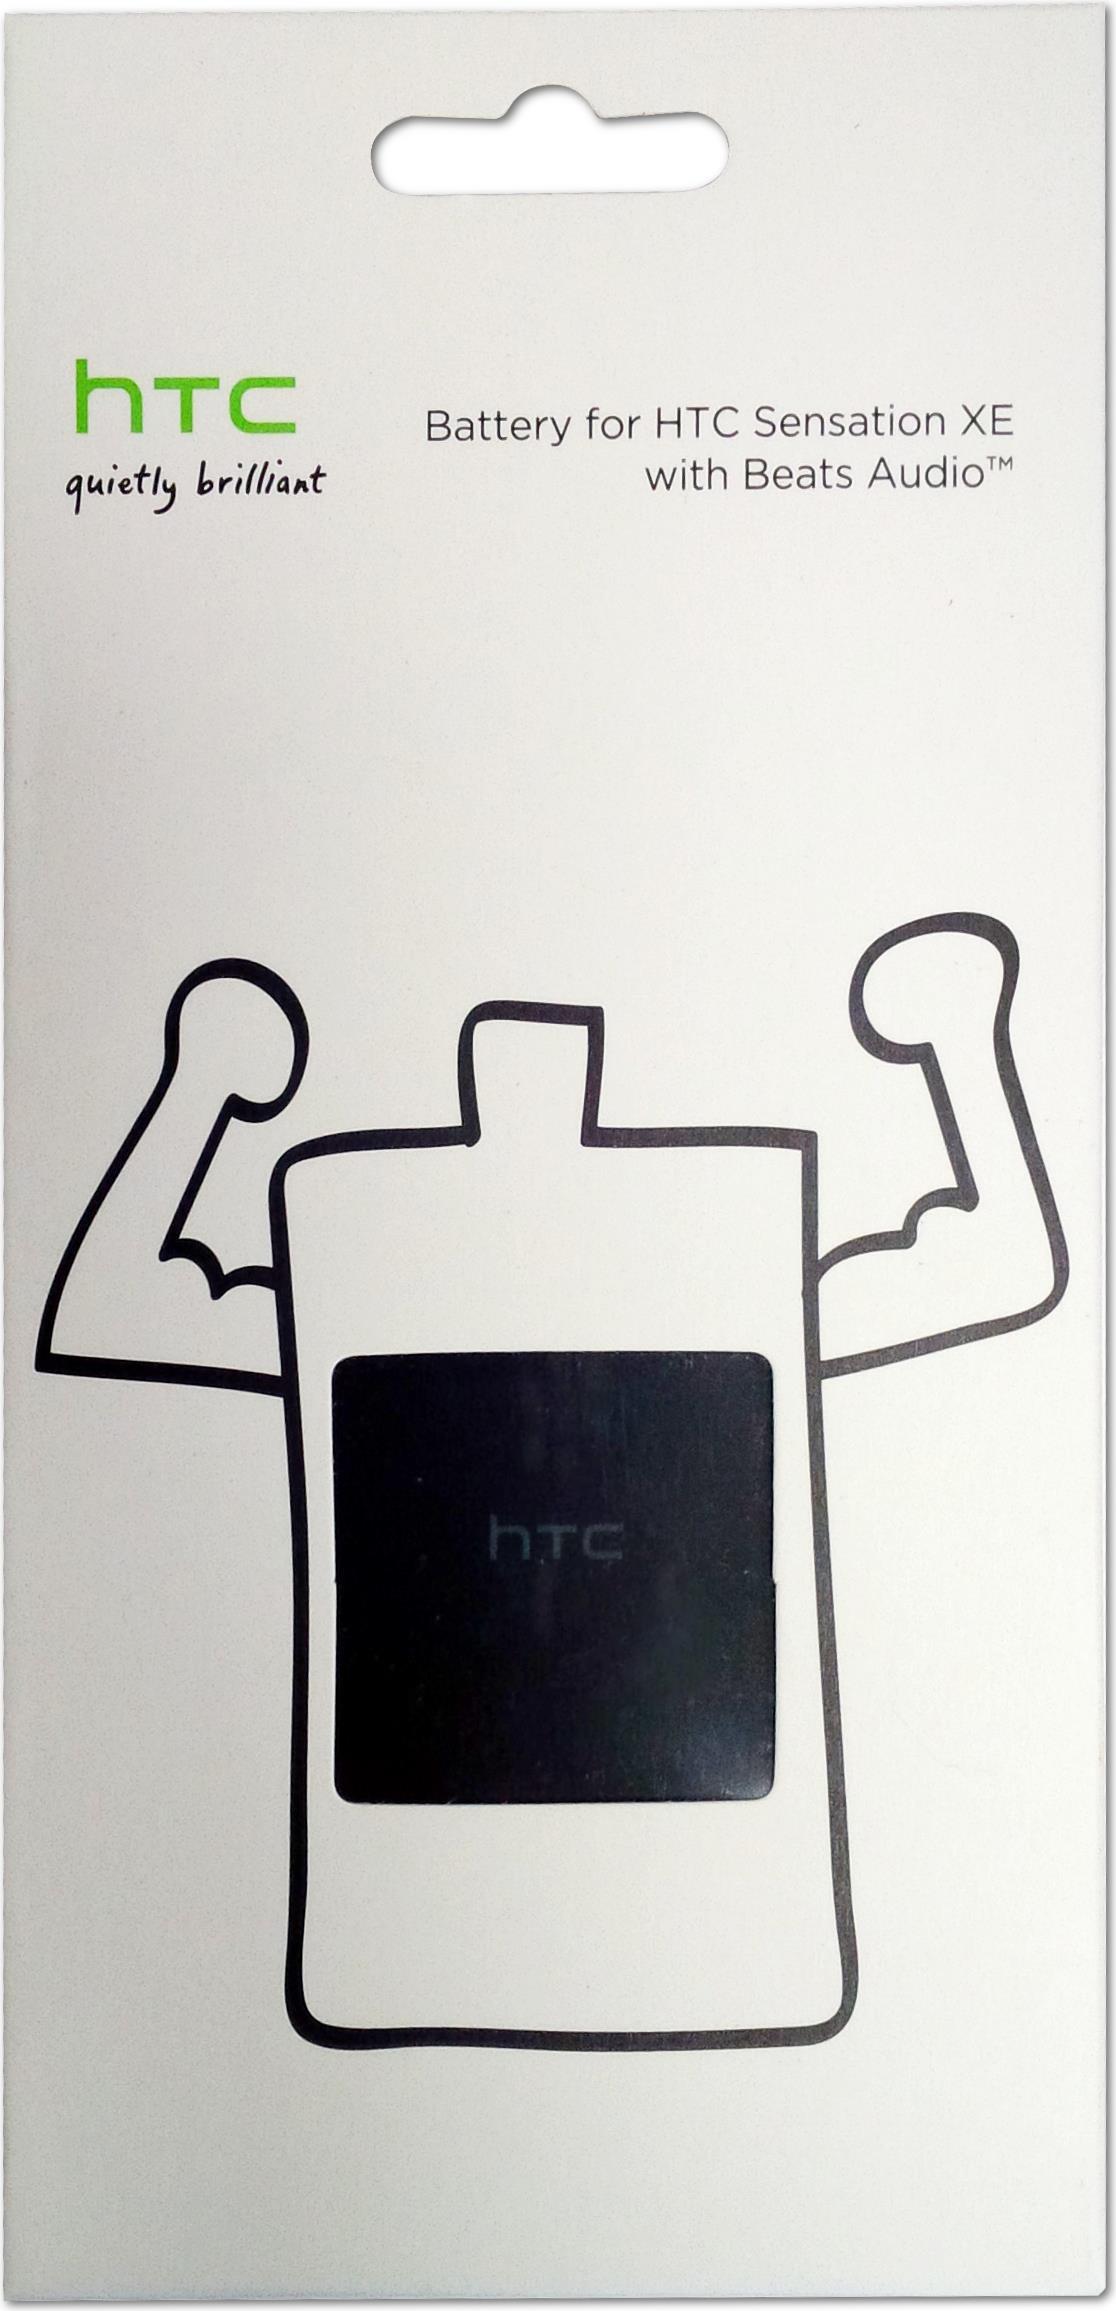 HTC Akku BA-S780 99H10597-00, 1730 mAh, Blister (BA-S780 99H10597-00) von HTC